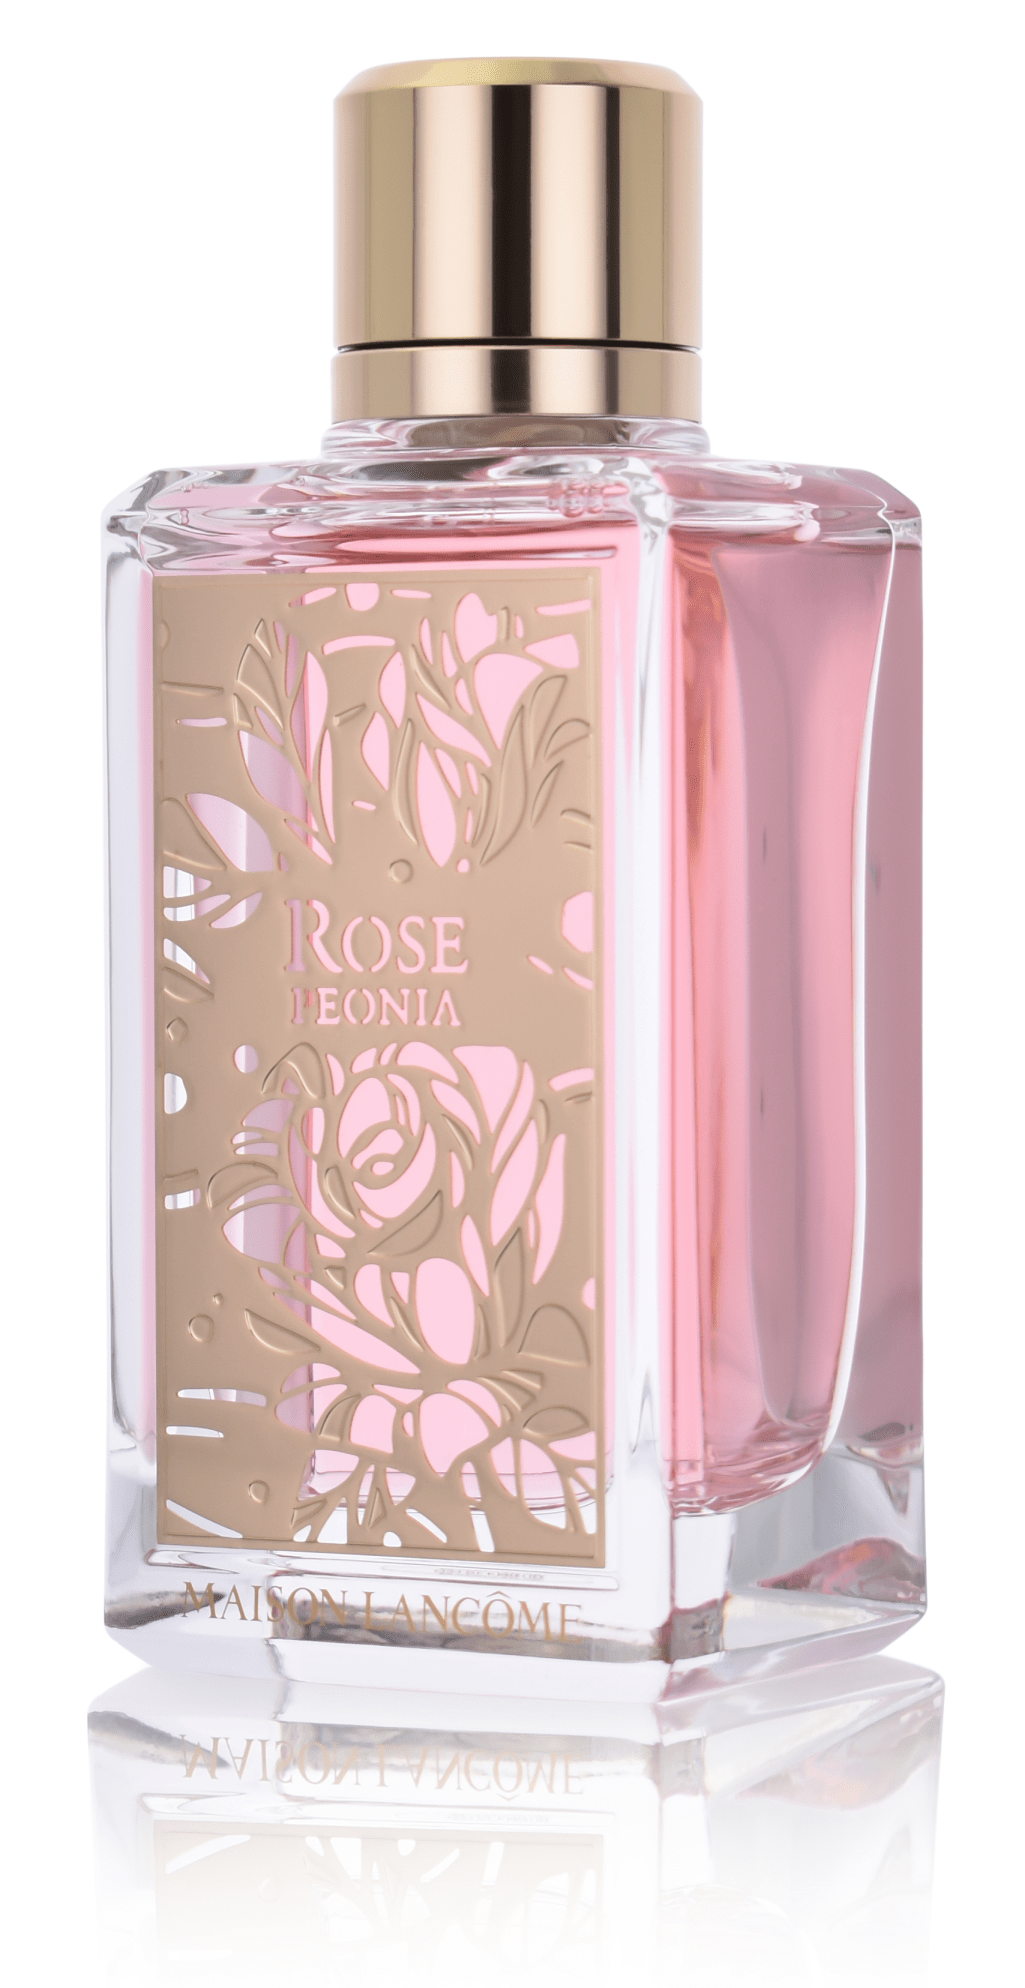 Maison Lancome Rose Peonia 5 Ml Eau De Parfum Abfüllung 967